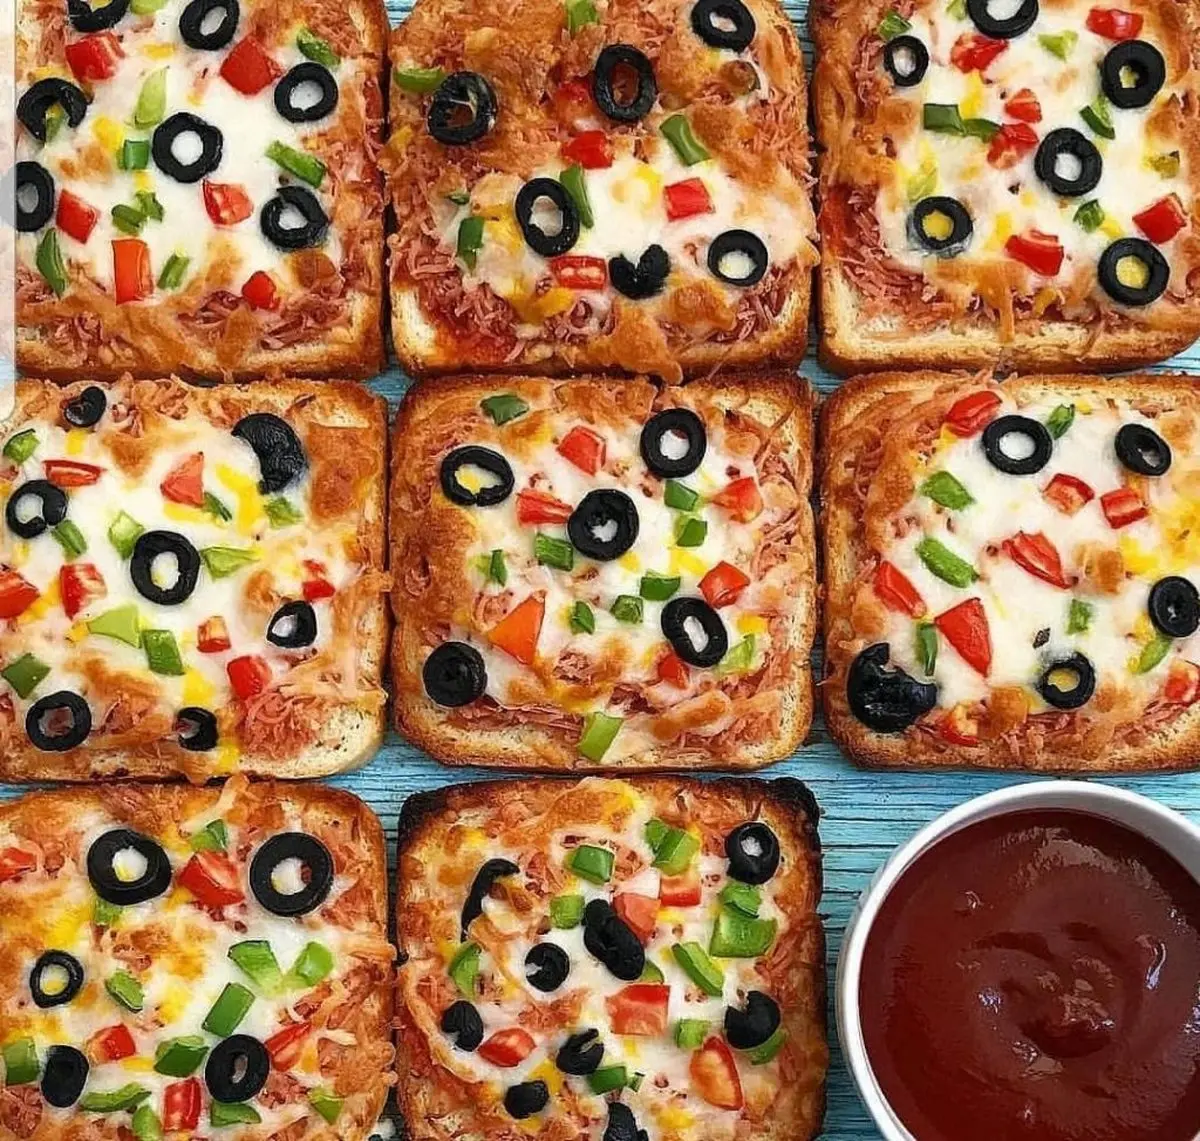 وقتی گشنه هستی توی سه سوت این پیتزا راحت رو درست کن! | طرز تهیه پیتزا با نون تست + ویدئو